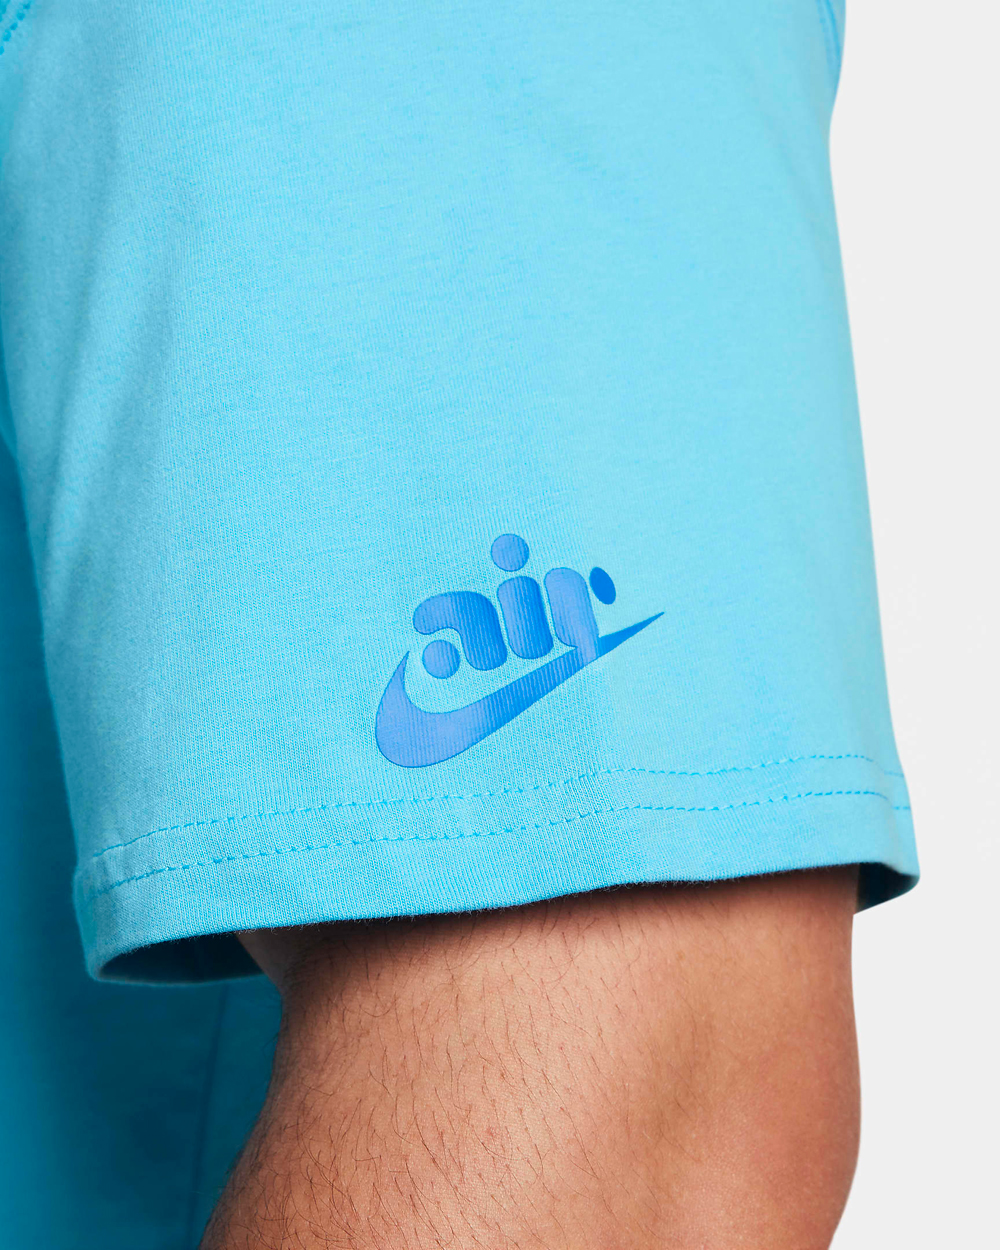 Nike-Air-Max-Shirt-Baltic-Blue-3